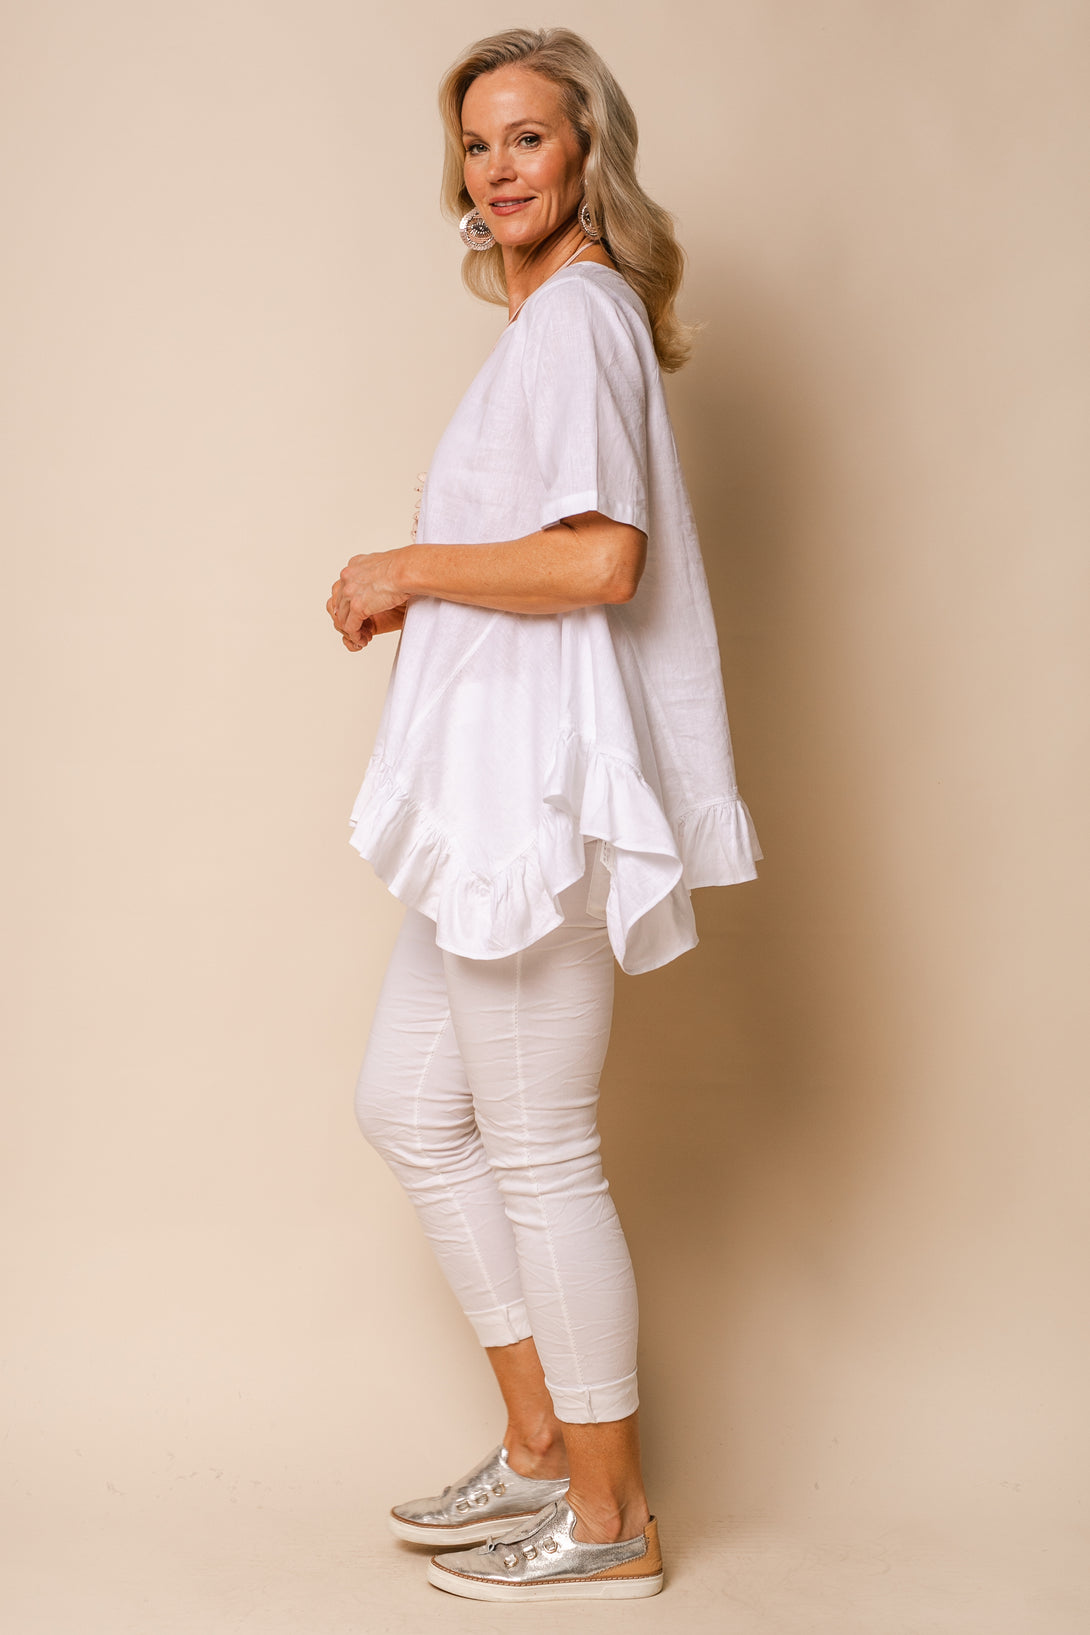 Shiloh Linen Blend Top in White - Imagine Fashion